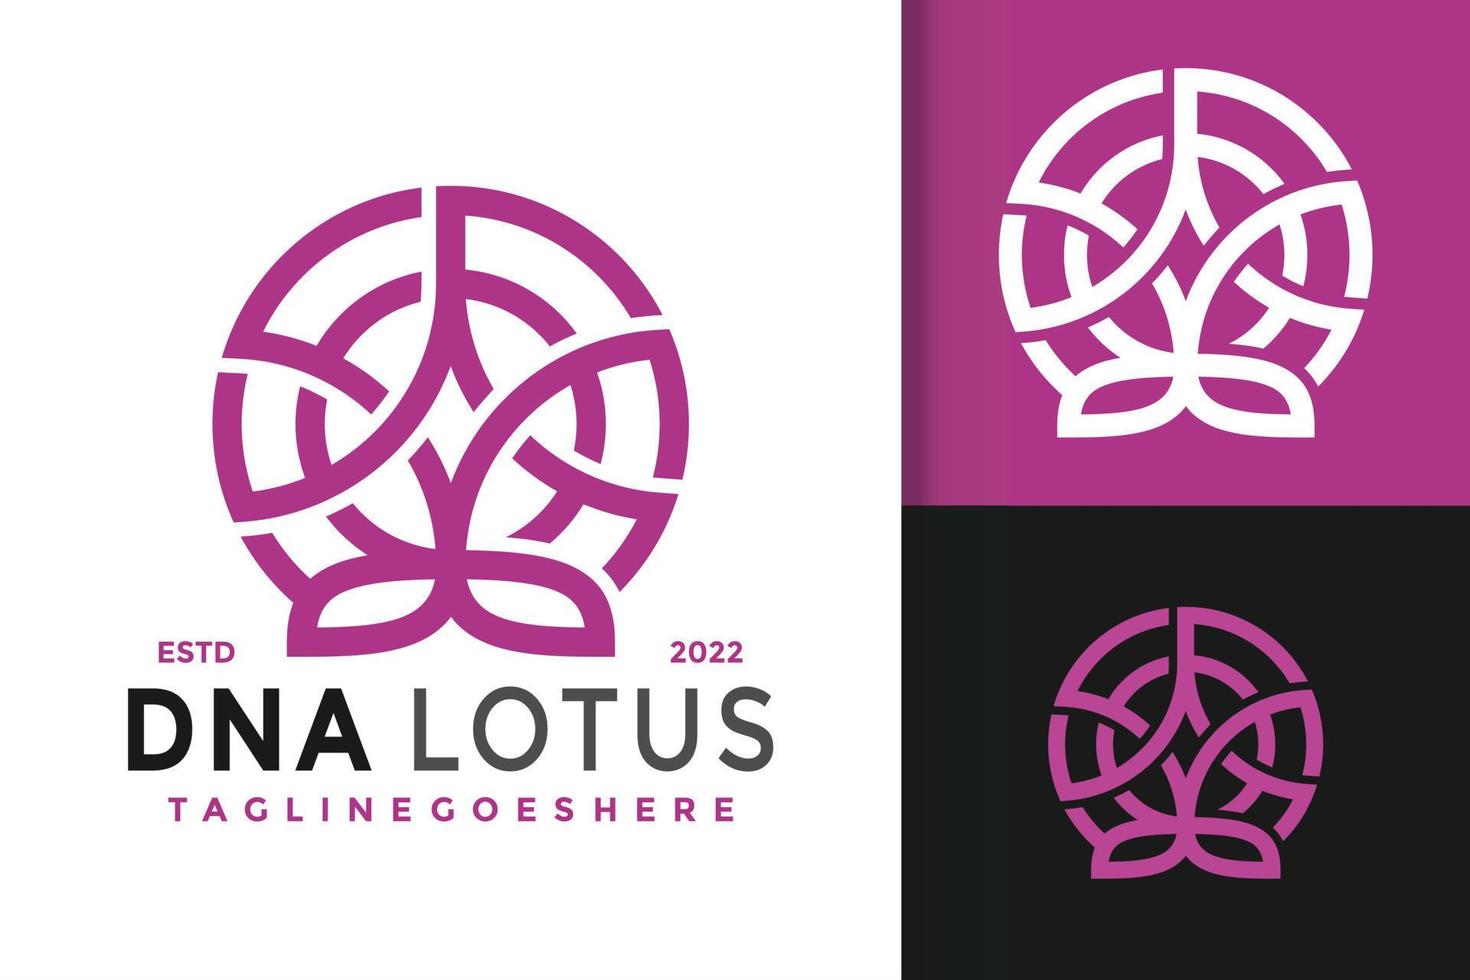 dna lotusblüte logo design, markenidentitätslogos vektor, modernes logo, logo entwirft vektorillustrationsvorlage vektor